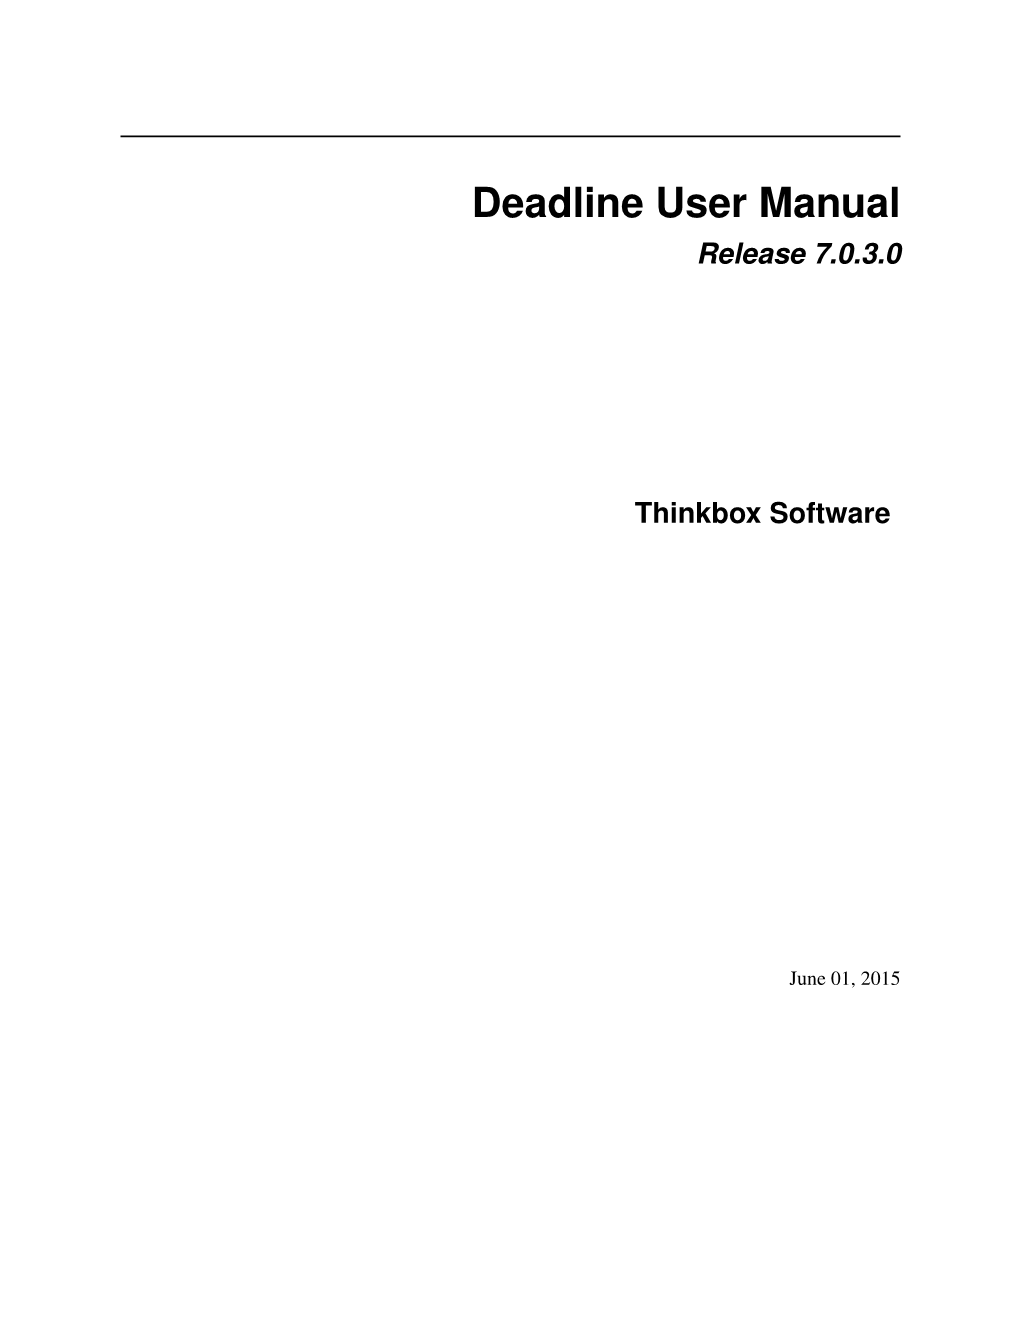 Deadline User Manual Release 7.0.3.0